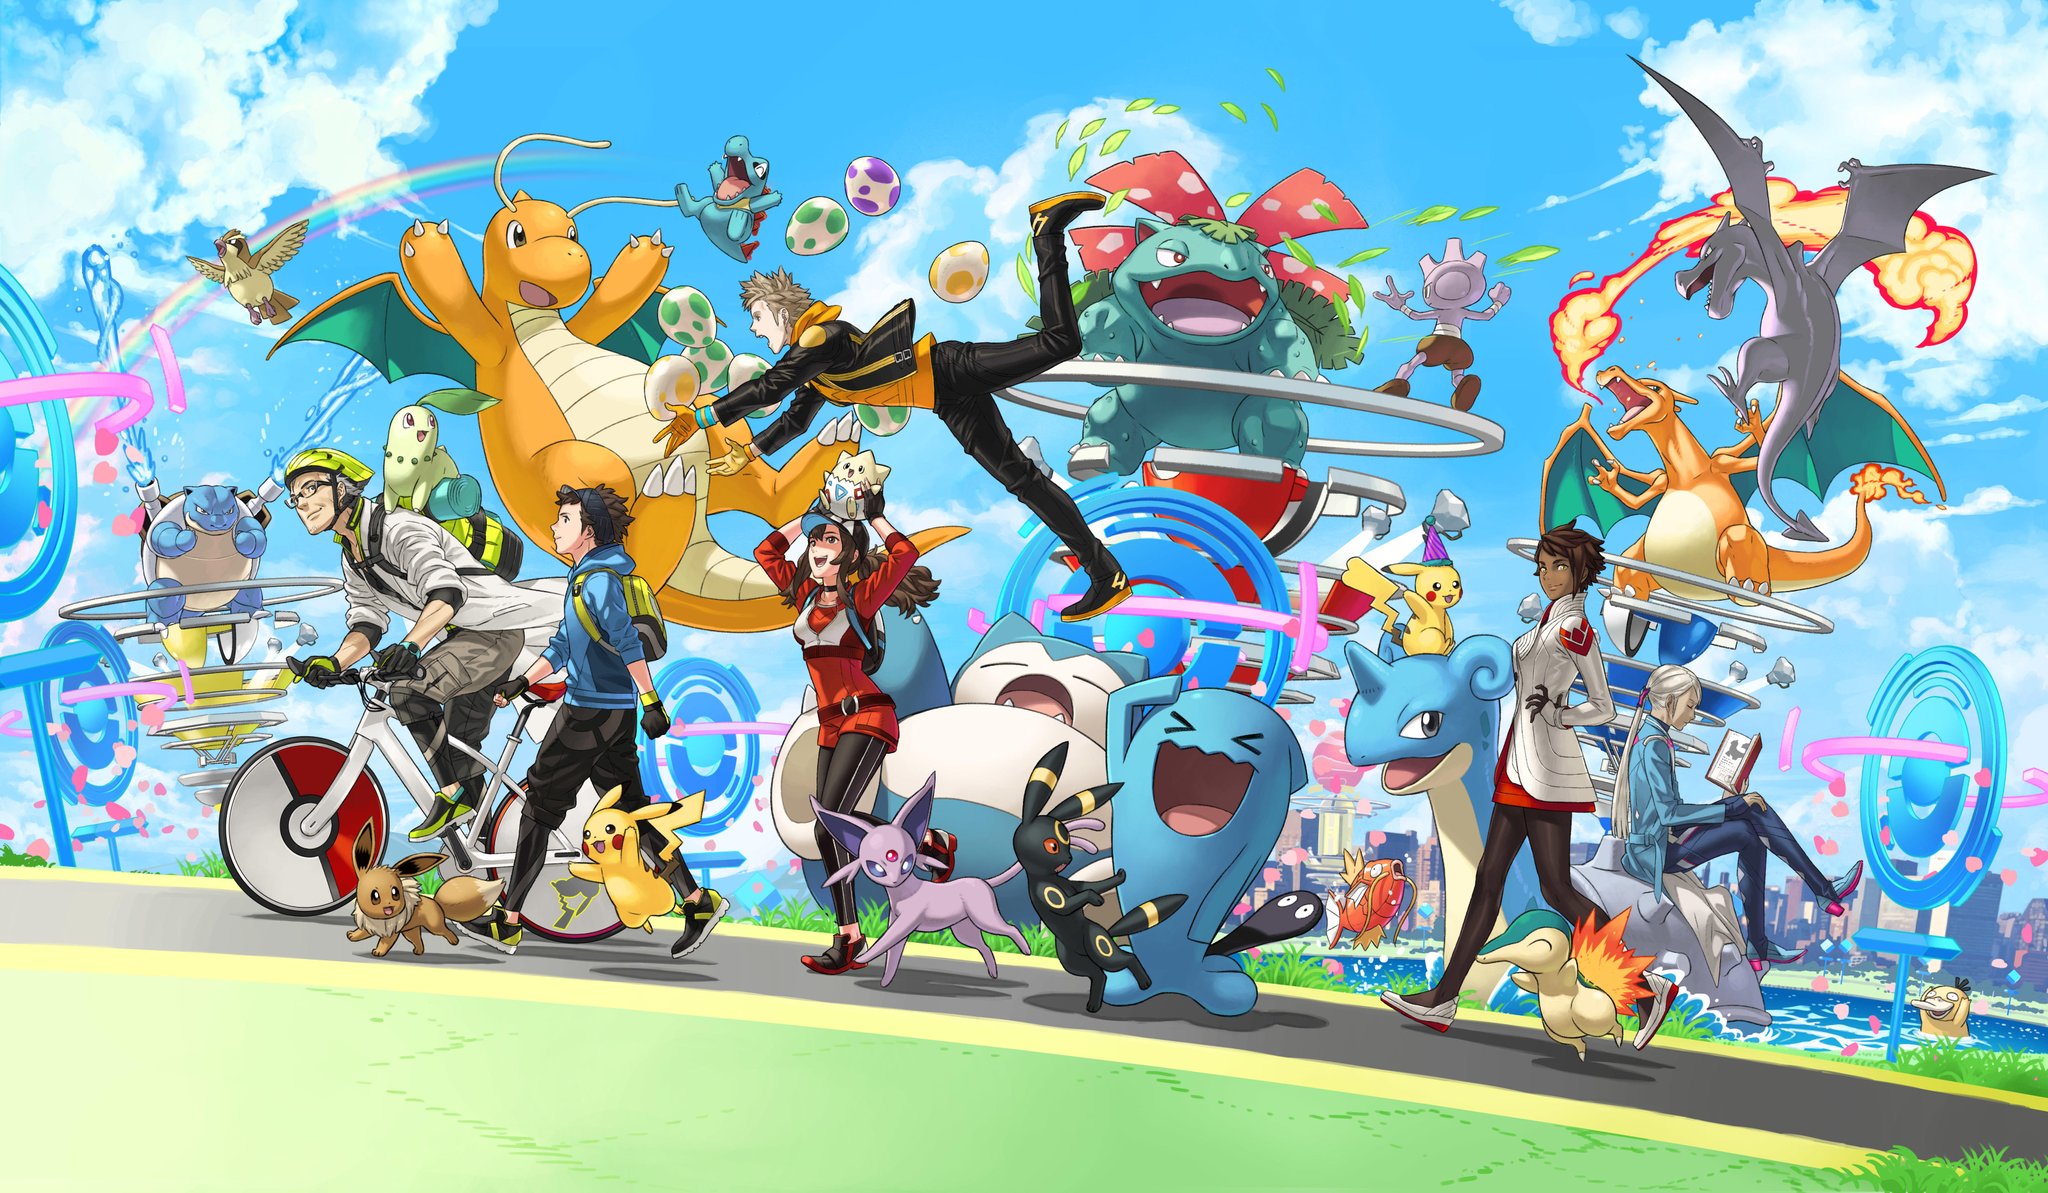 Anime 2048x1193 Pokémon Pokémon Go video games clouds sky bicycle walking